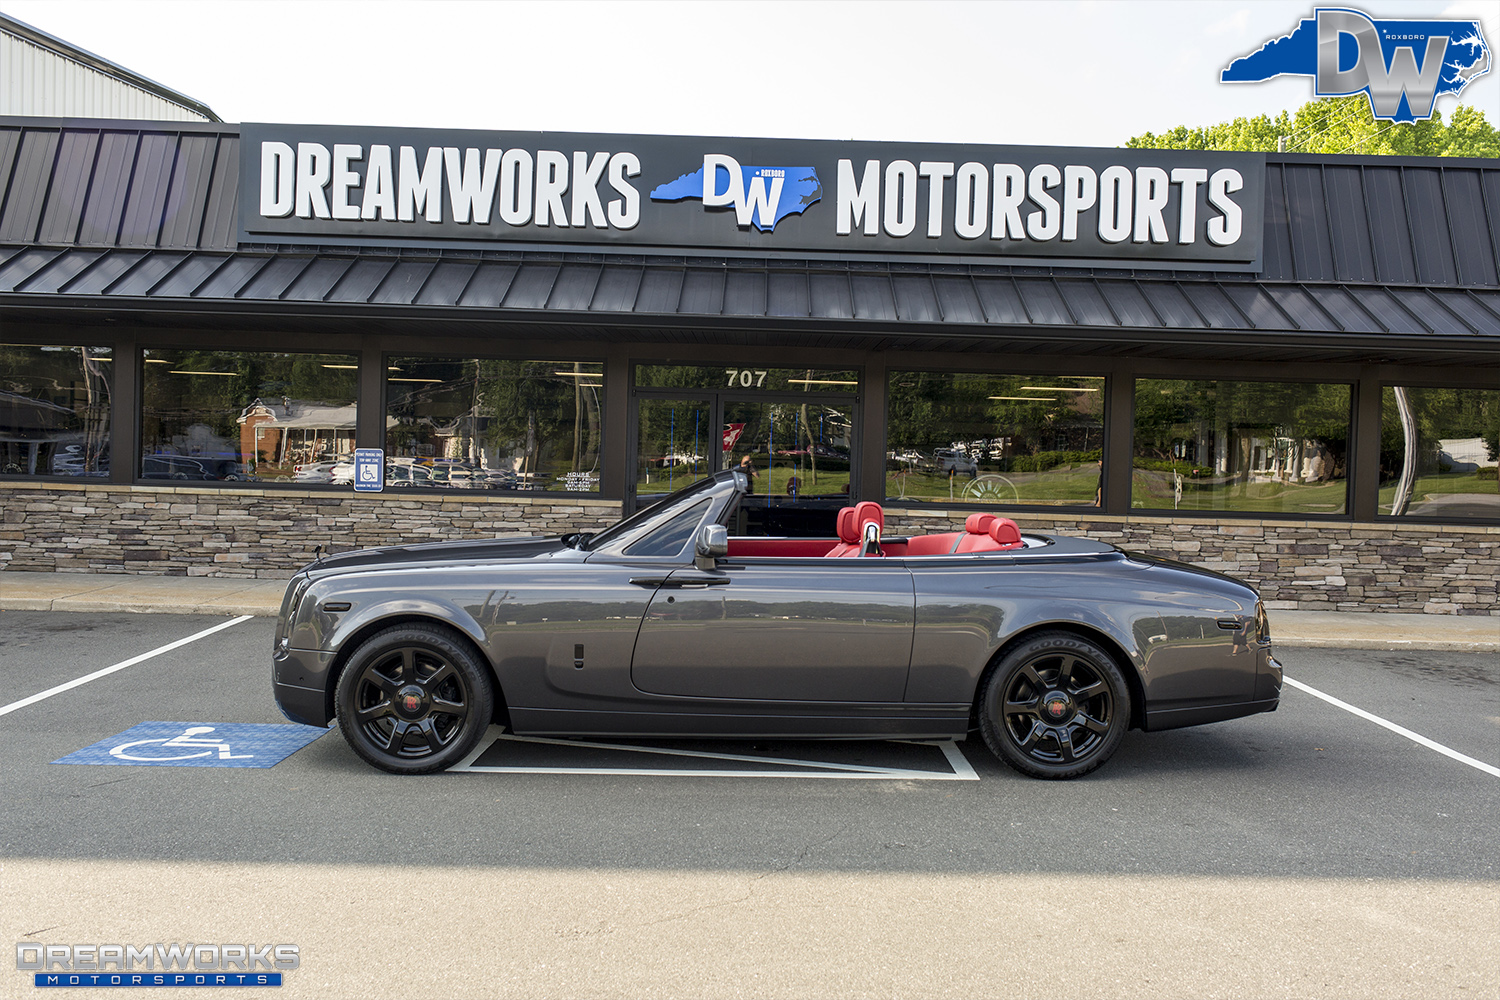 Rolls-Royce-Drophead-John-Wall-Dreamowrks-Motorsports-14.jpg